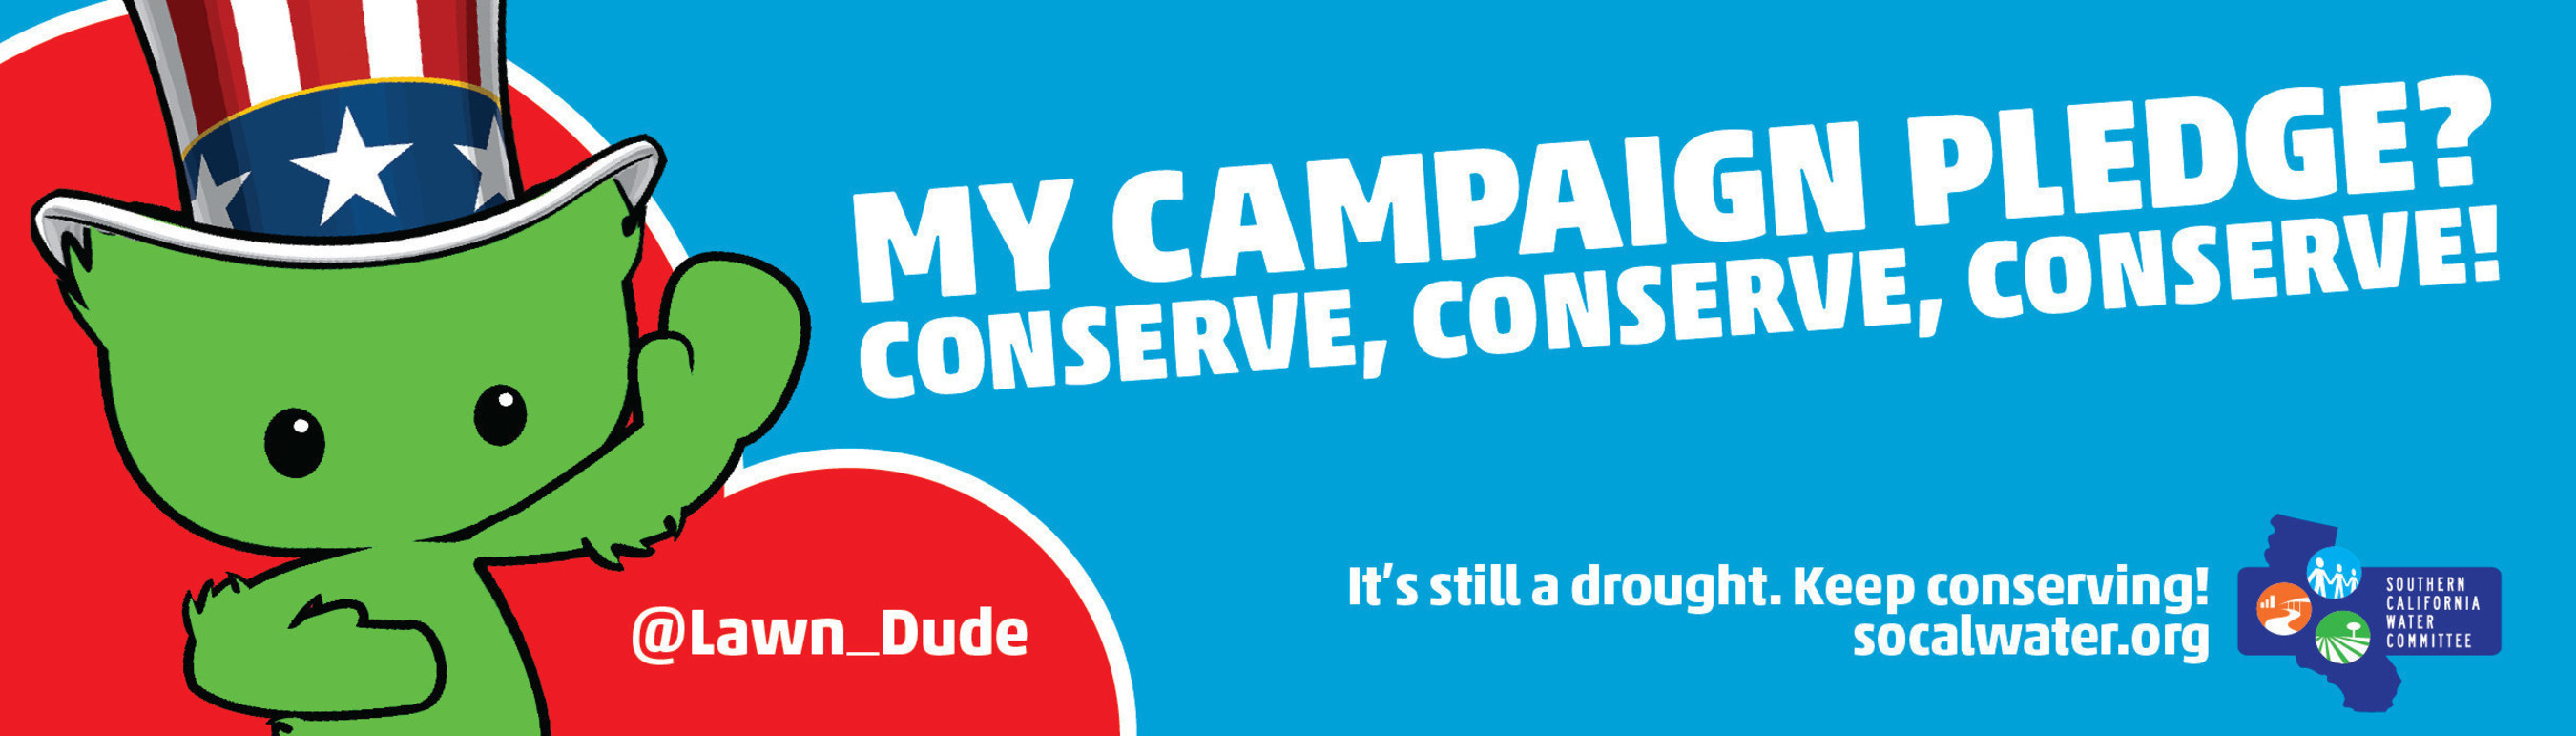 My Campaign Pledge? Conserve, Conserve, Conserve!